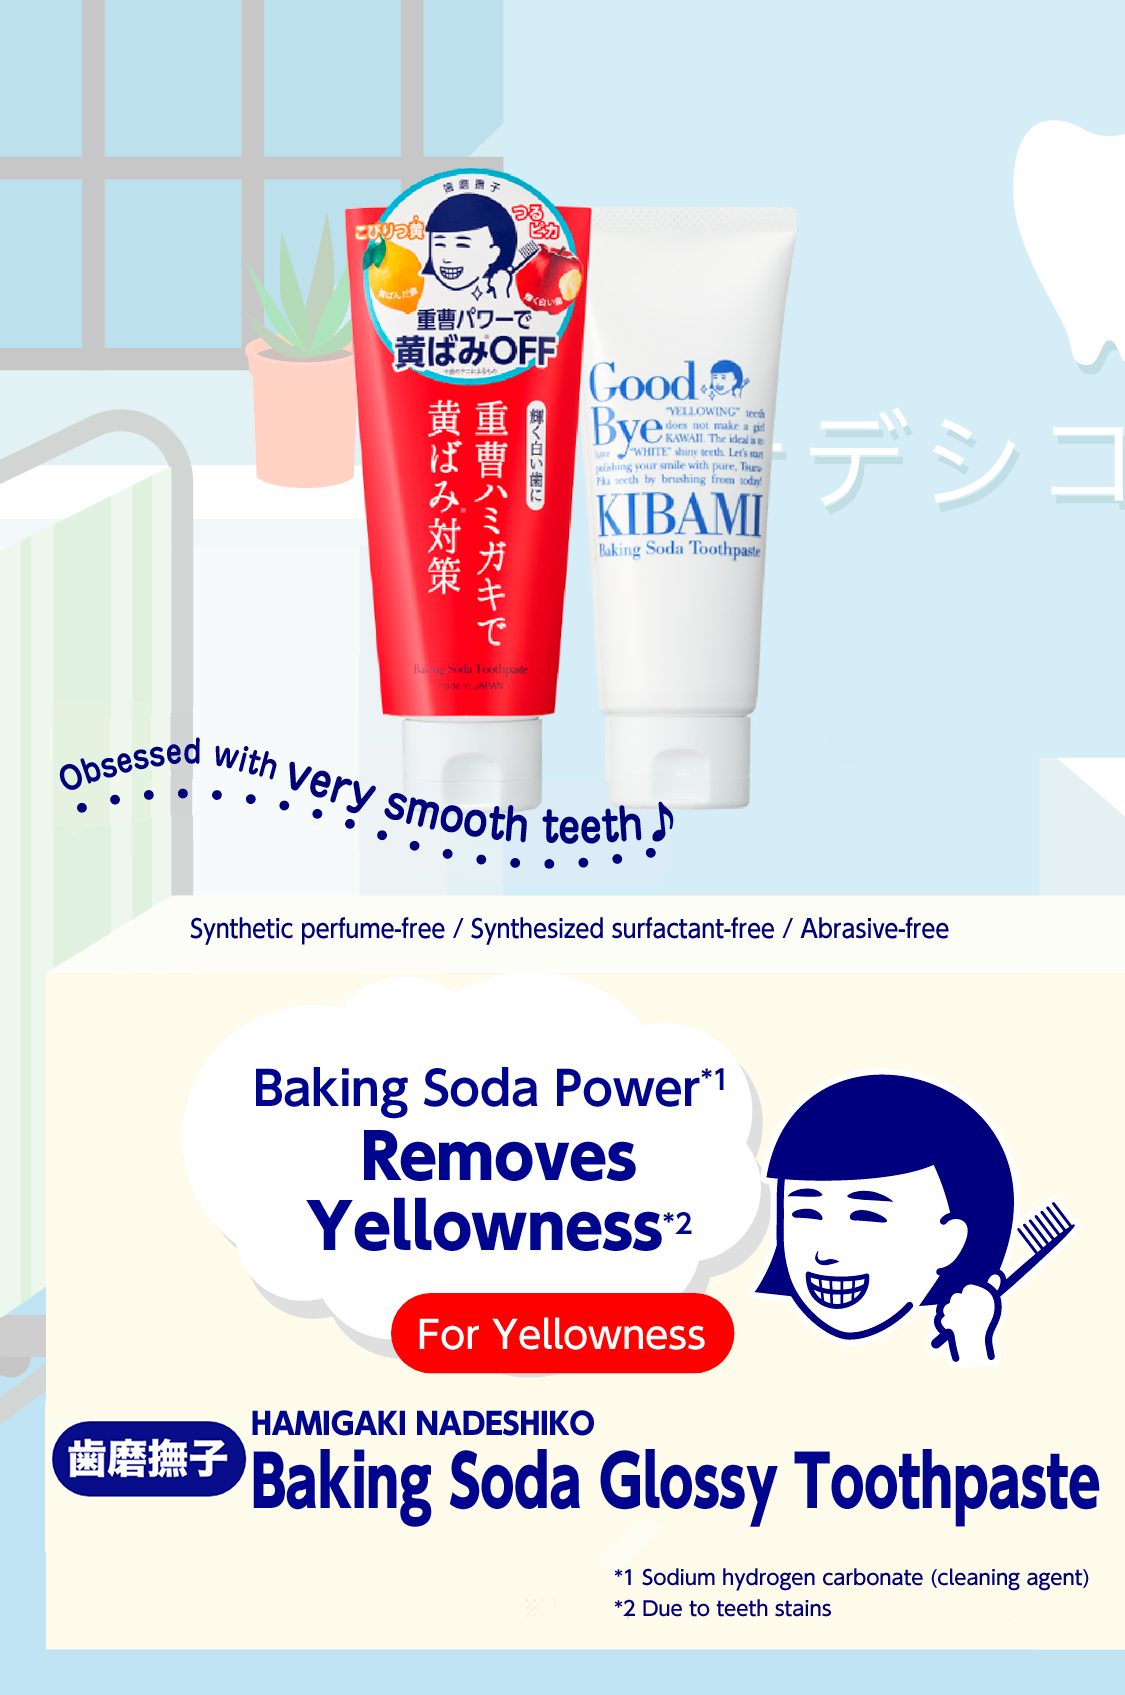 HAMIGAKI NADESHIKO Baking Soda Glossy Toothpaste